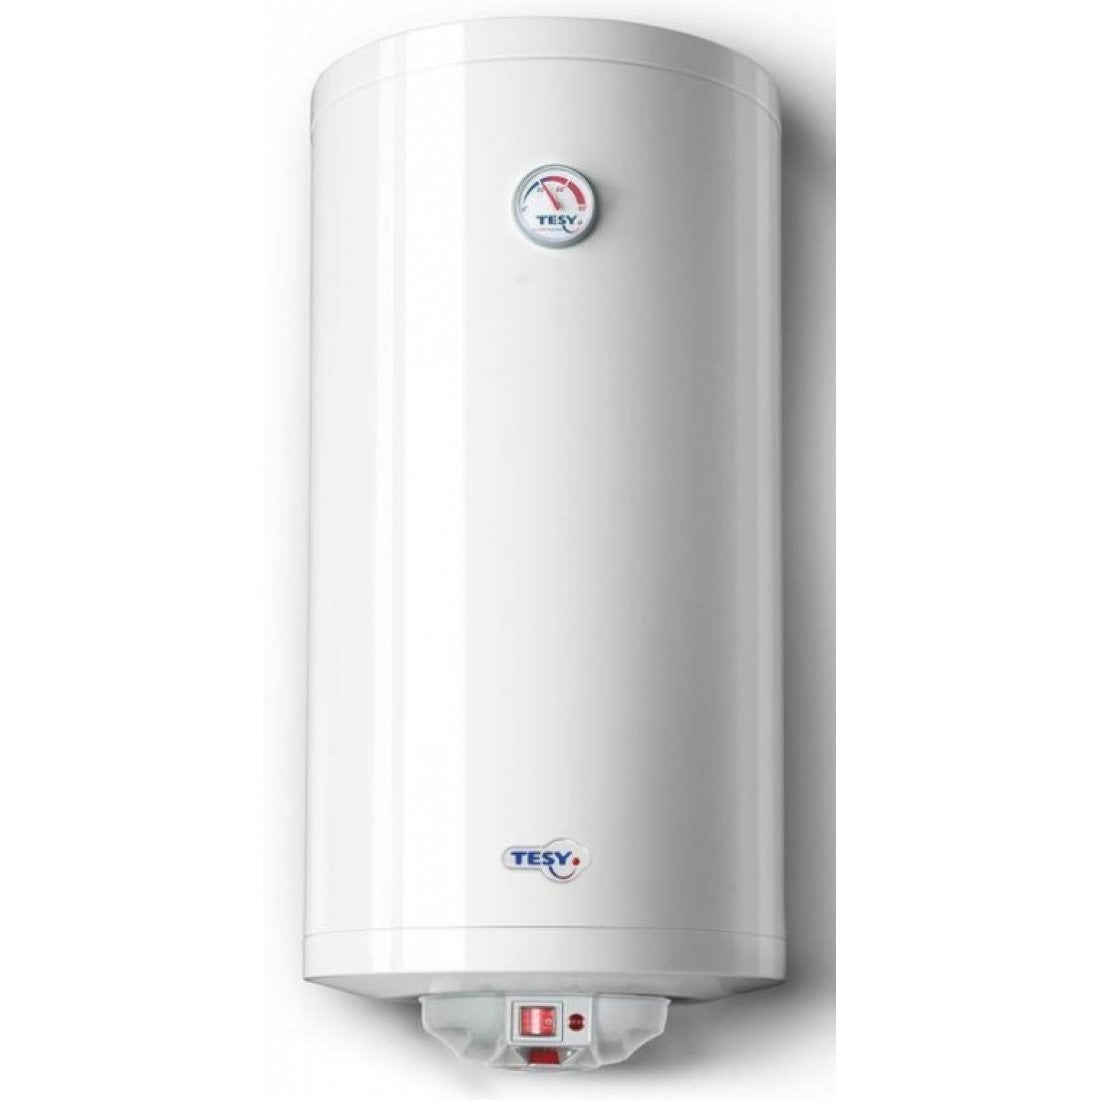 Tesy - (GCV 80) - Water Heater